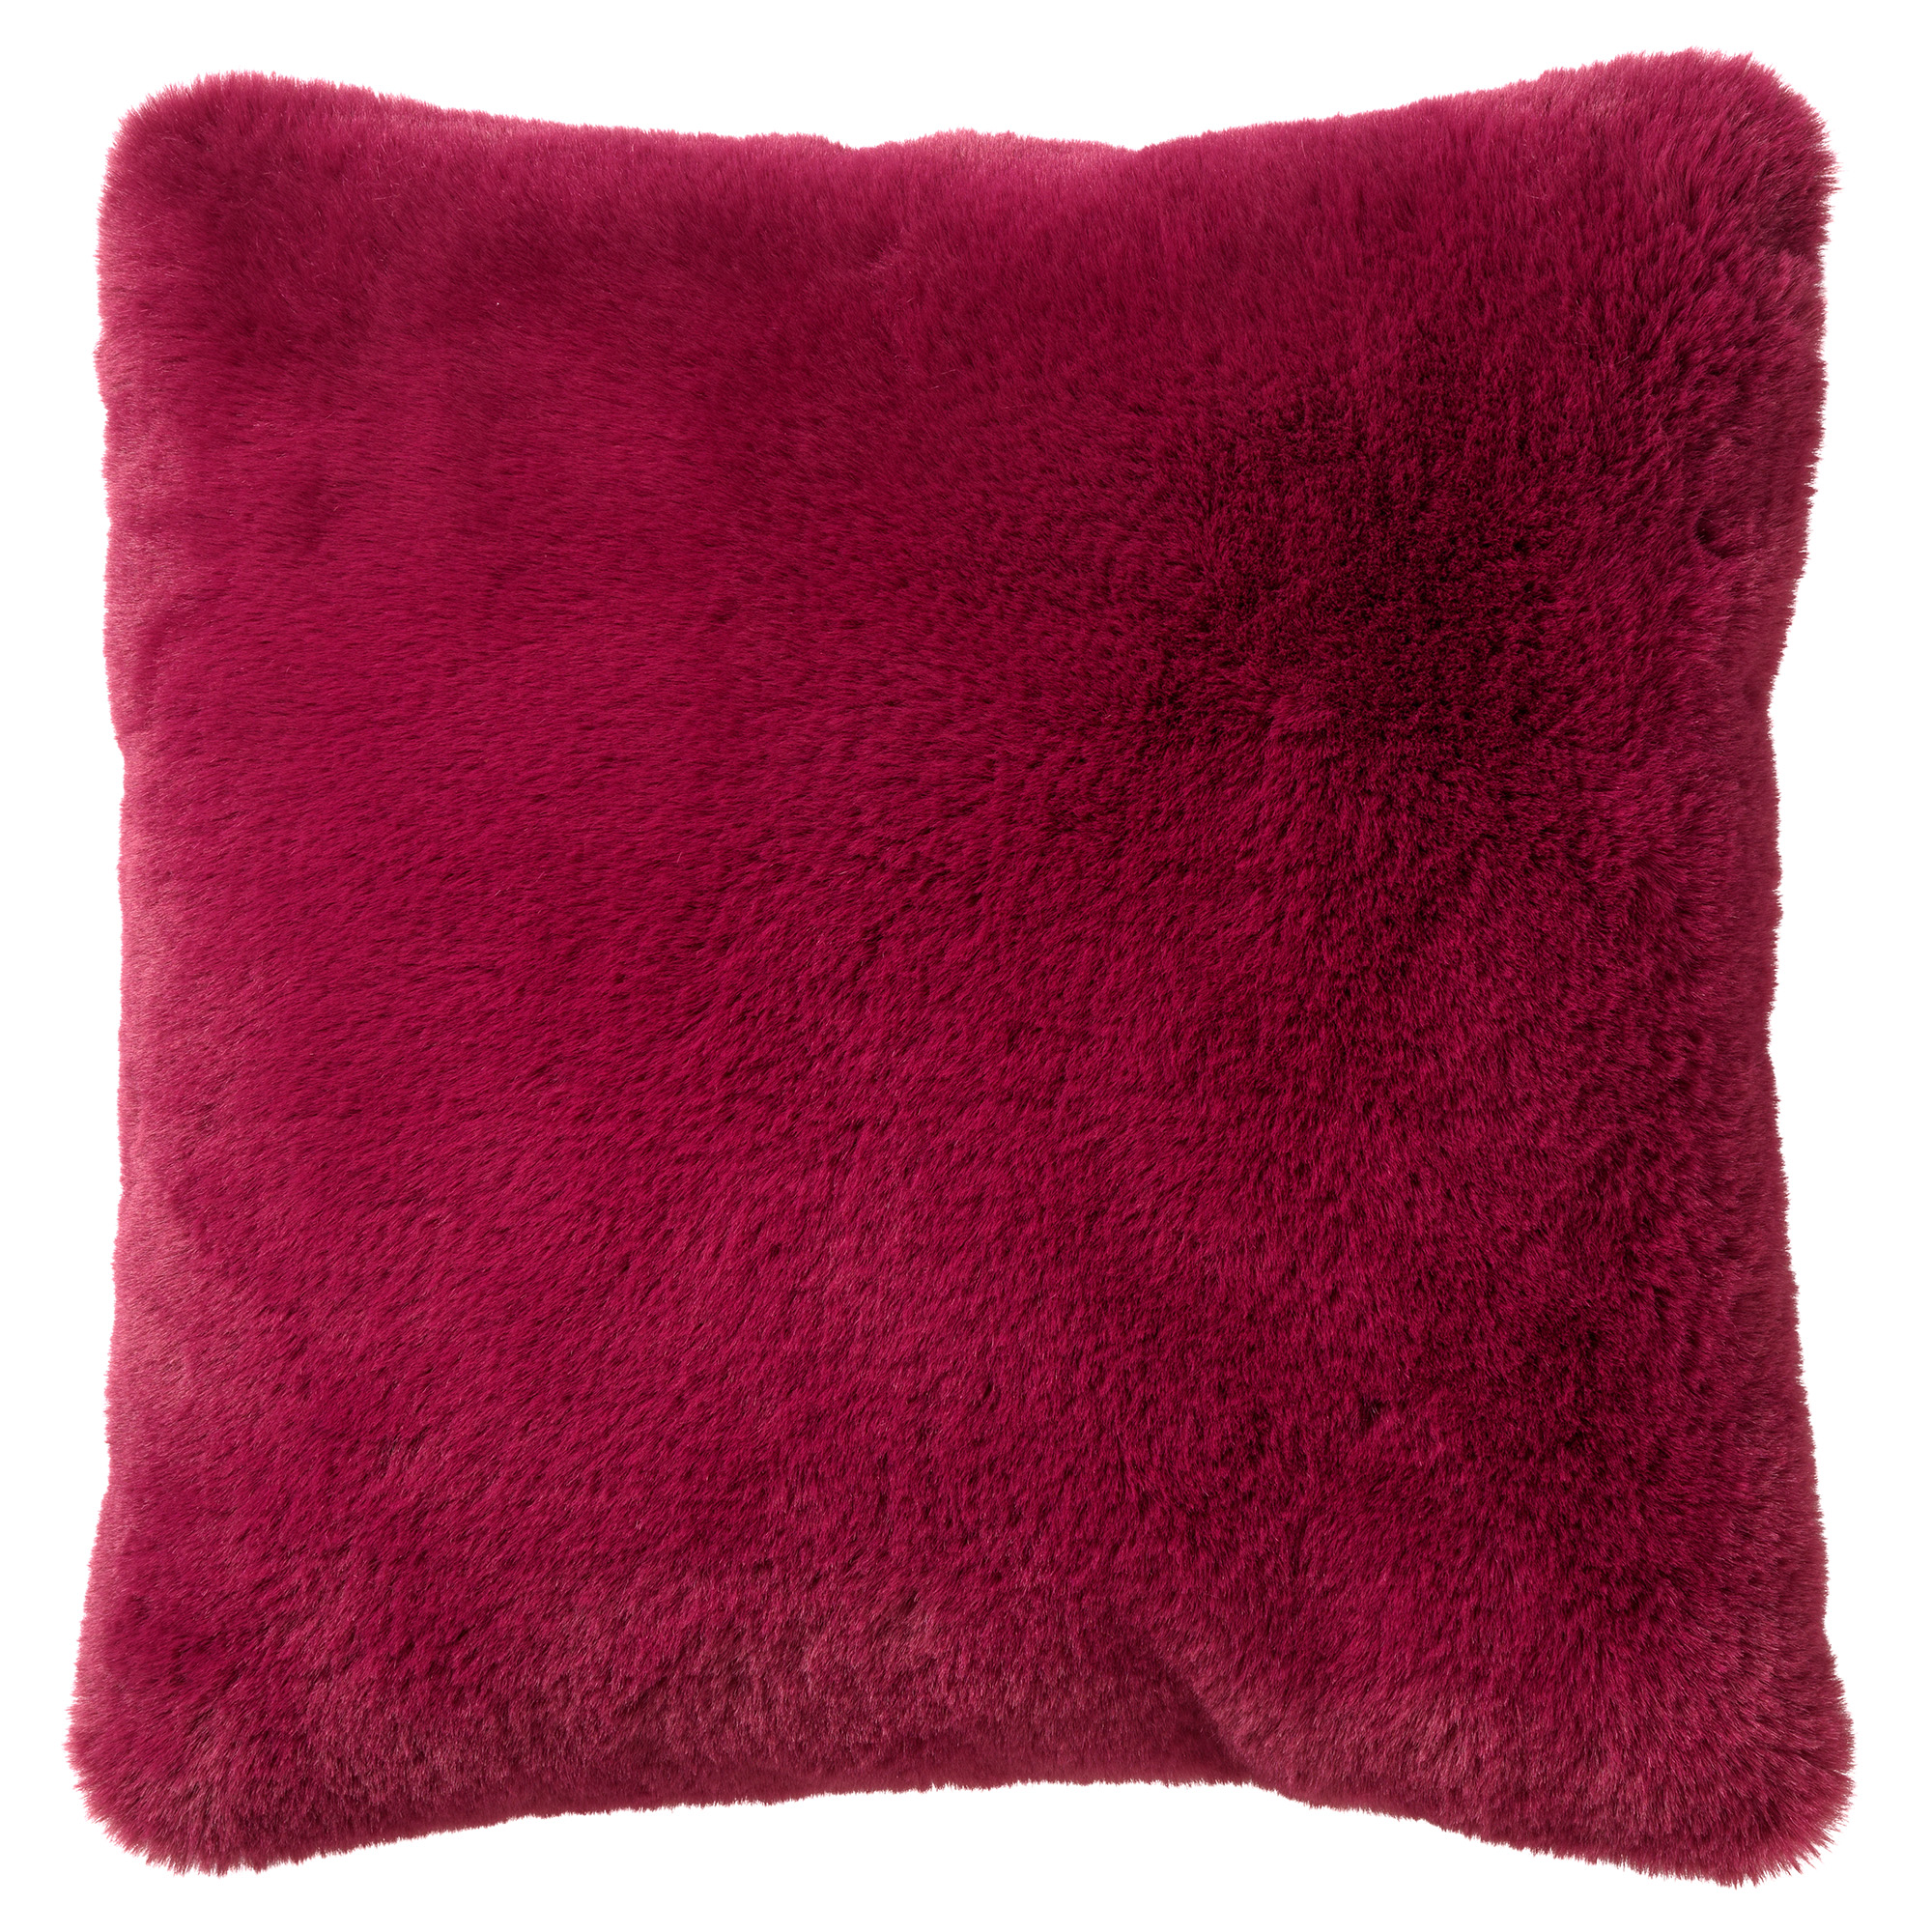 ZAYA - Kussenhoes 45x45 cm - bontlook - effen kleur - Red Plum - roze